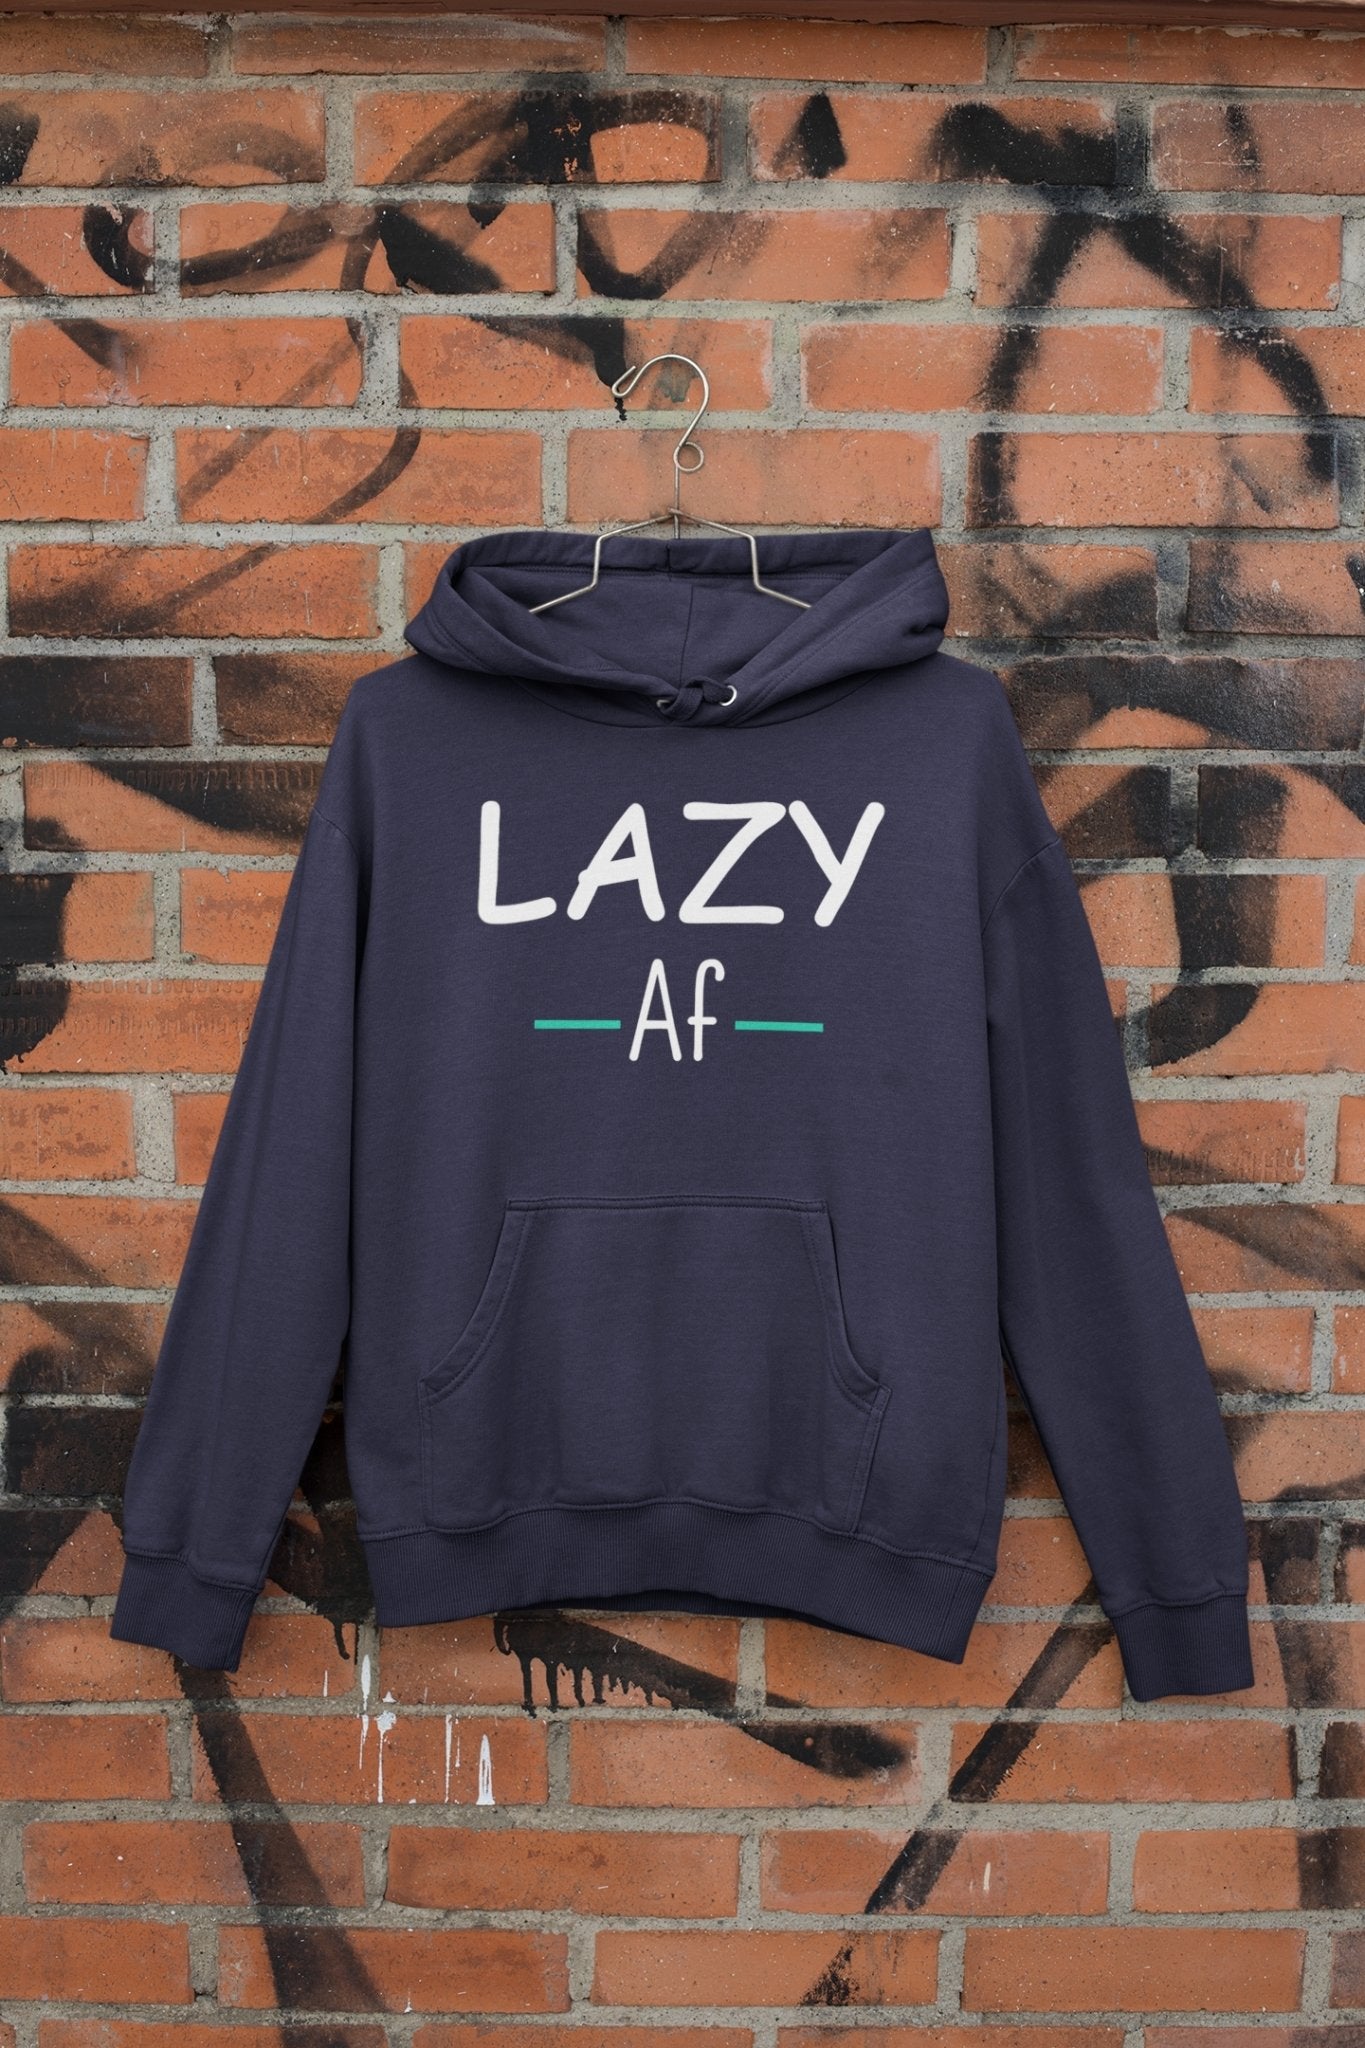 Lazy Af Typography Hoodies for Women-FunkyTeesClub - Funky Tees Club